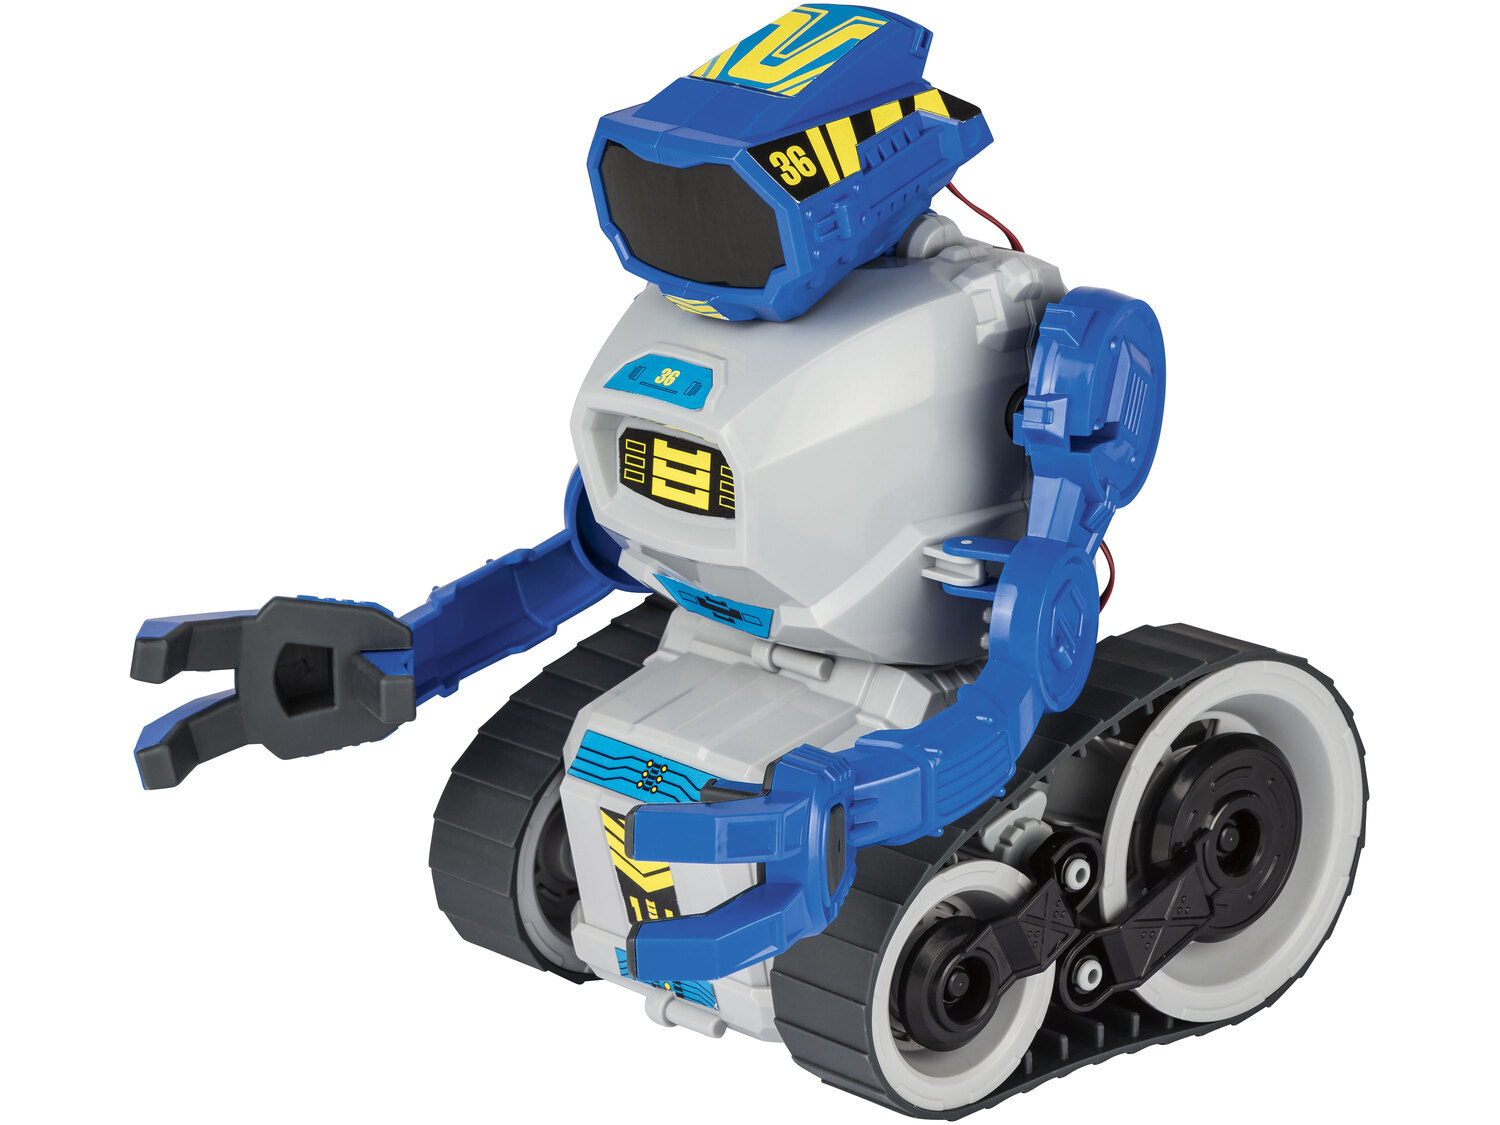 Robot z możliwością programowania Playtive, cena 129,00 PLN 
- programowana ...